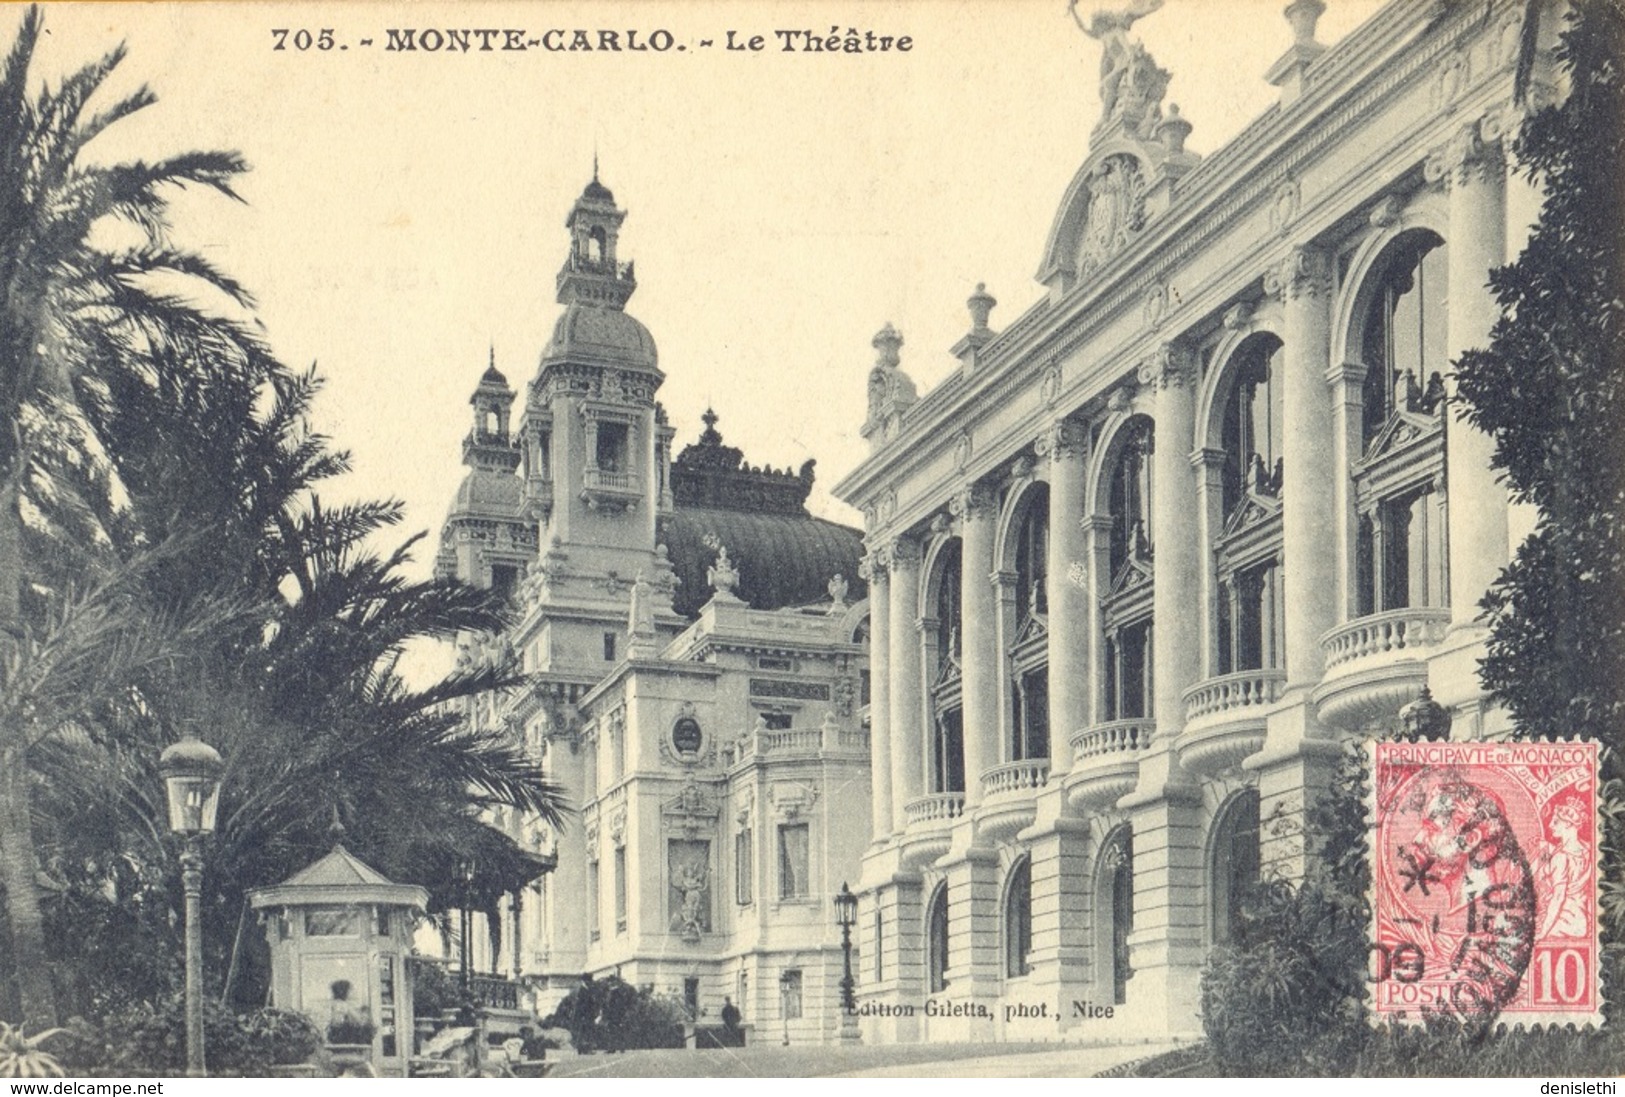 MONTE-CARLO - Le Théâtre - Operahuis & Theater